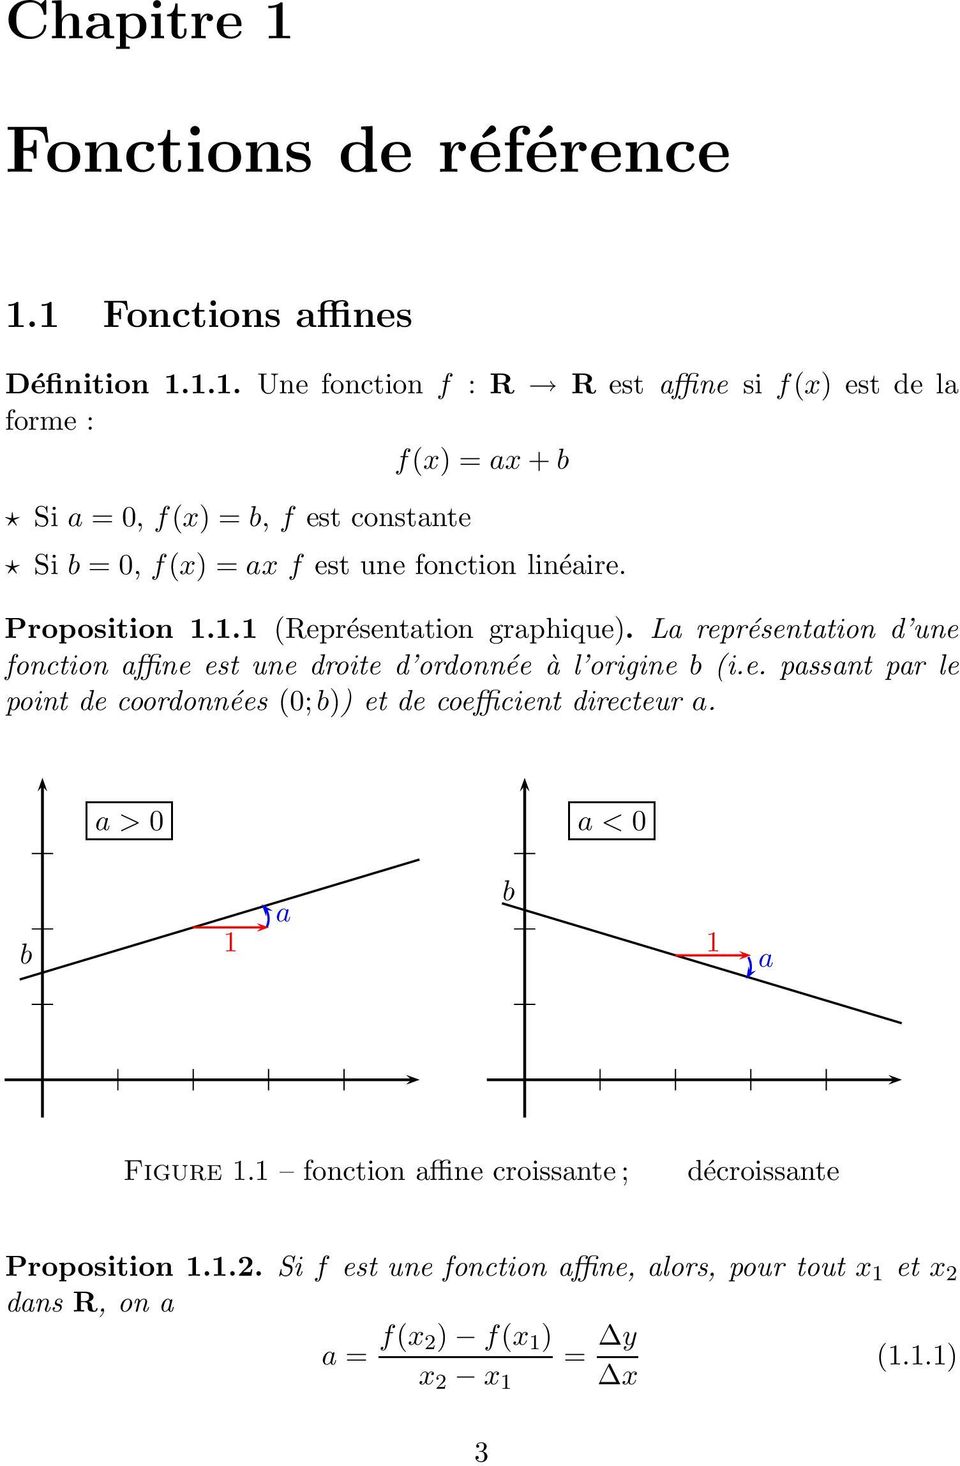 1 Fonctions affines Définition 1.1.1. Une fonction f : R R est affine si f(x) est de la forme : f(x) = ax + b Si a = 0, f(x) = b, f est constante Si b = 0, f(x) = ax f est une fonction linéaire.